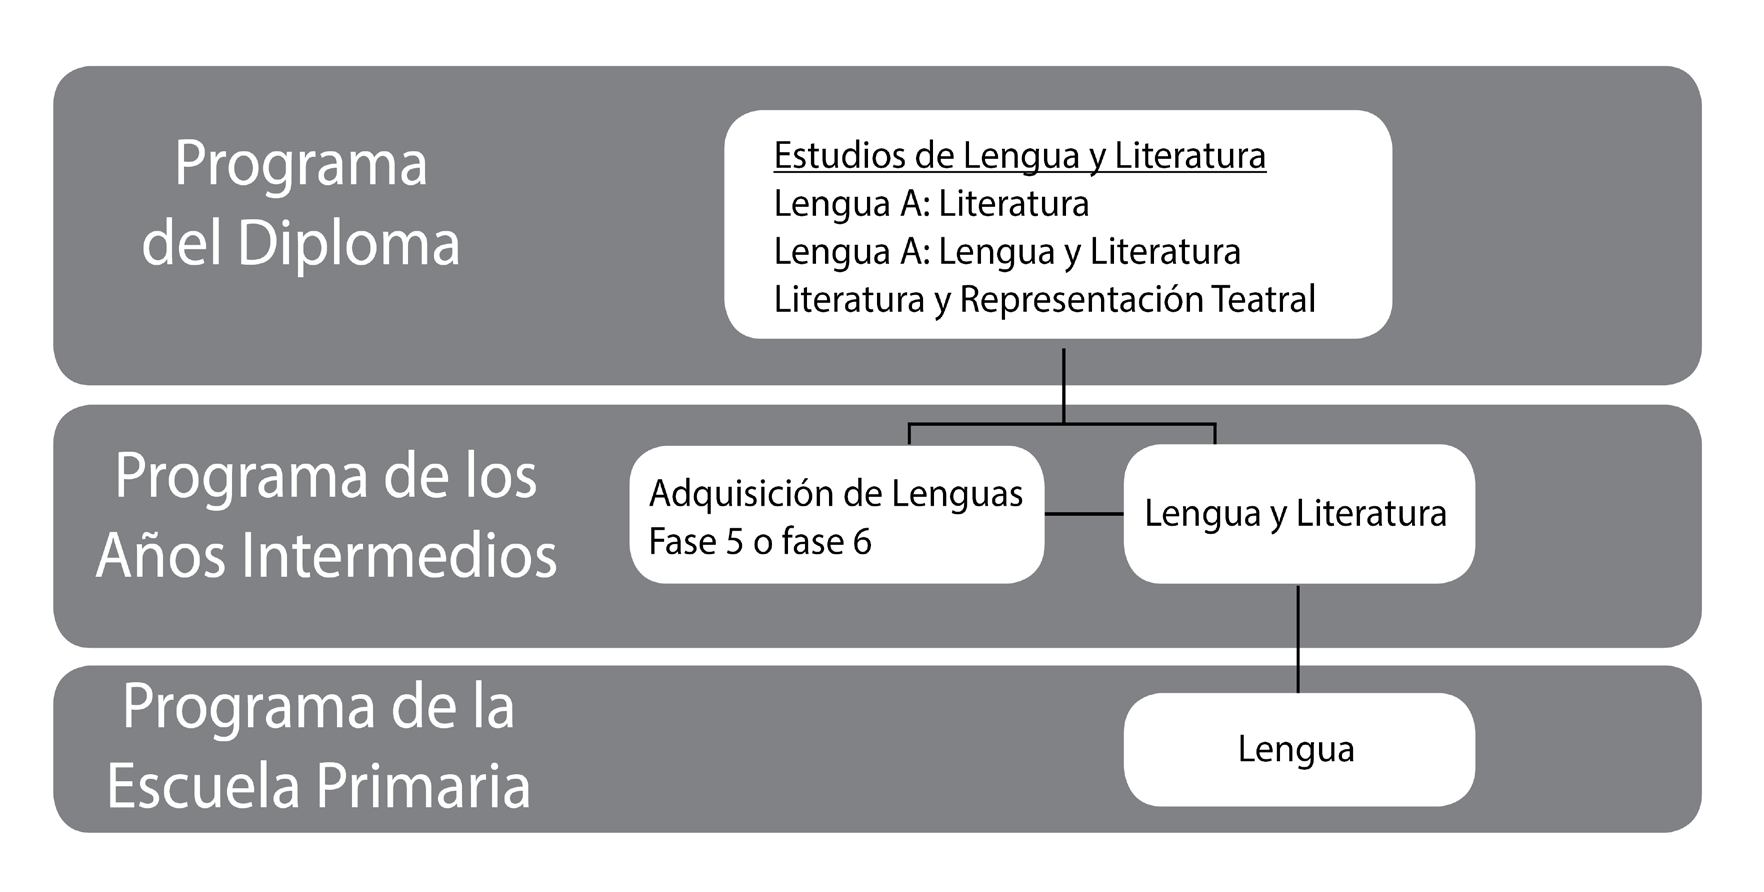 Lengua y Literatura en el PAI Lengua y Literatura en el continuo de programas del IB Lengua y Literatura del PAI parte de las experiencias de aprendizaje de lengua que los alumnos han adquirido